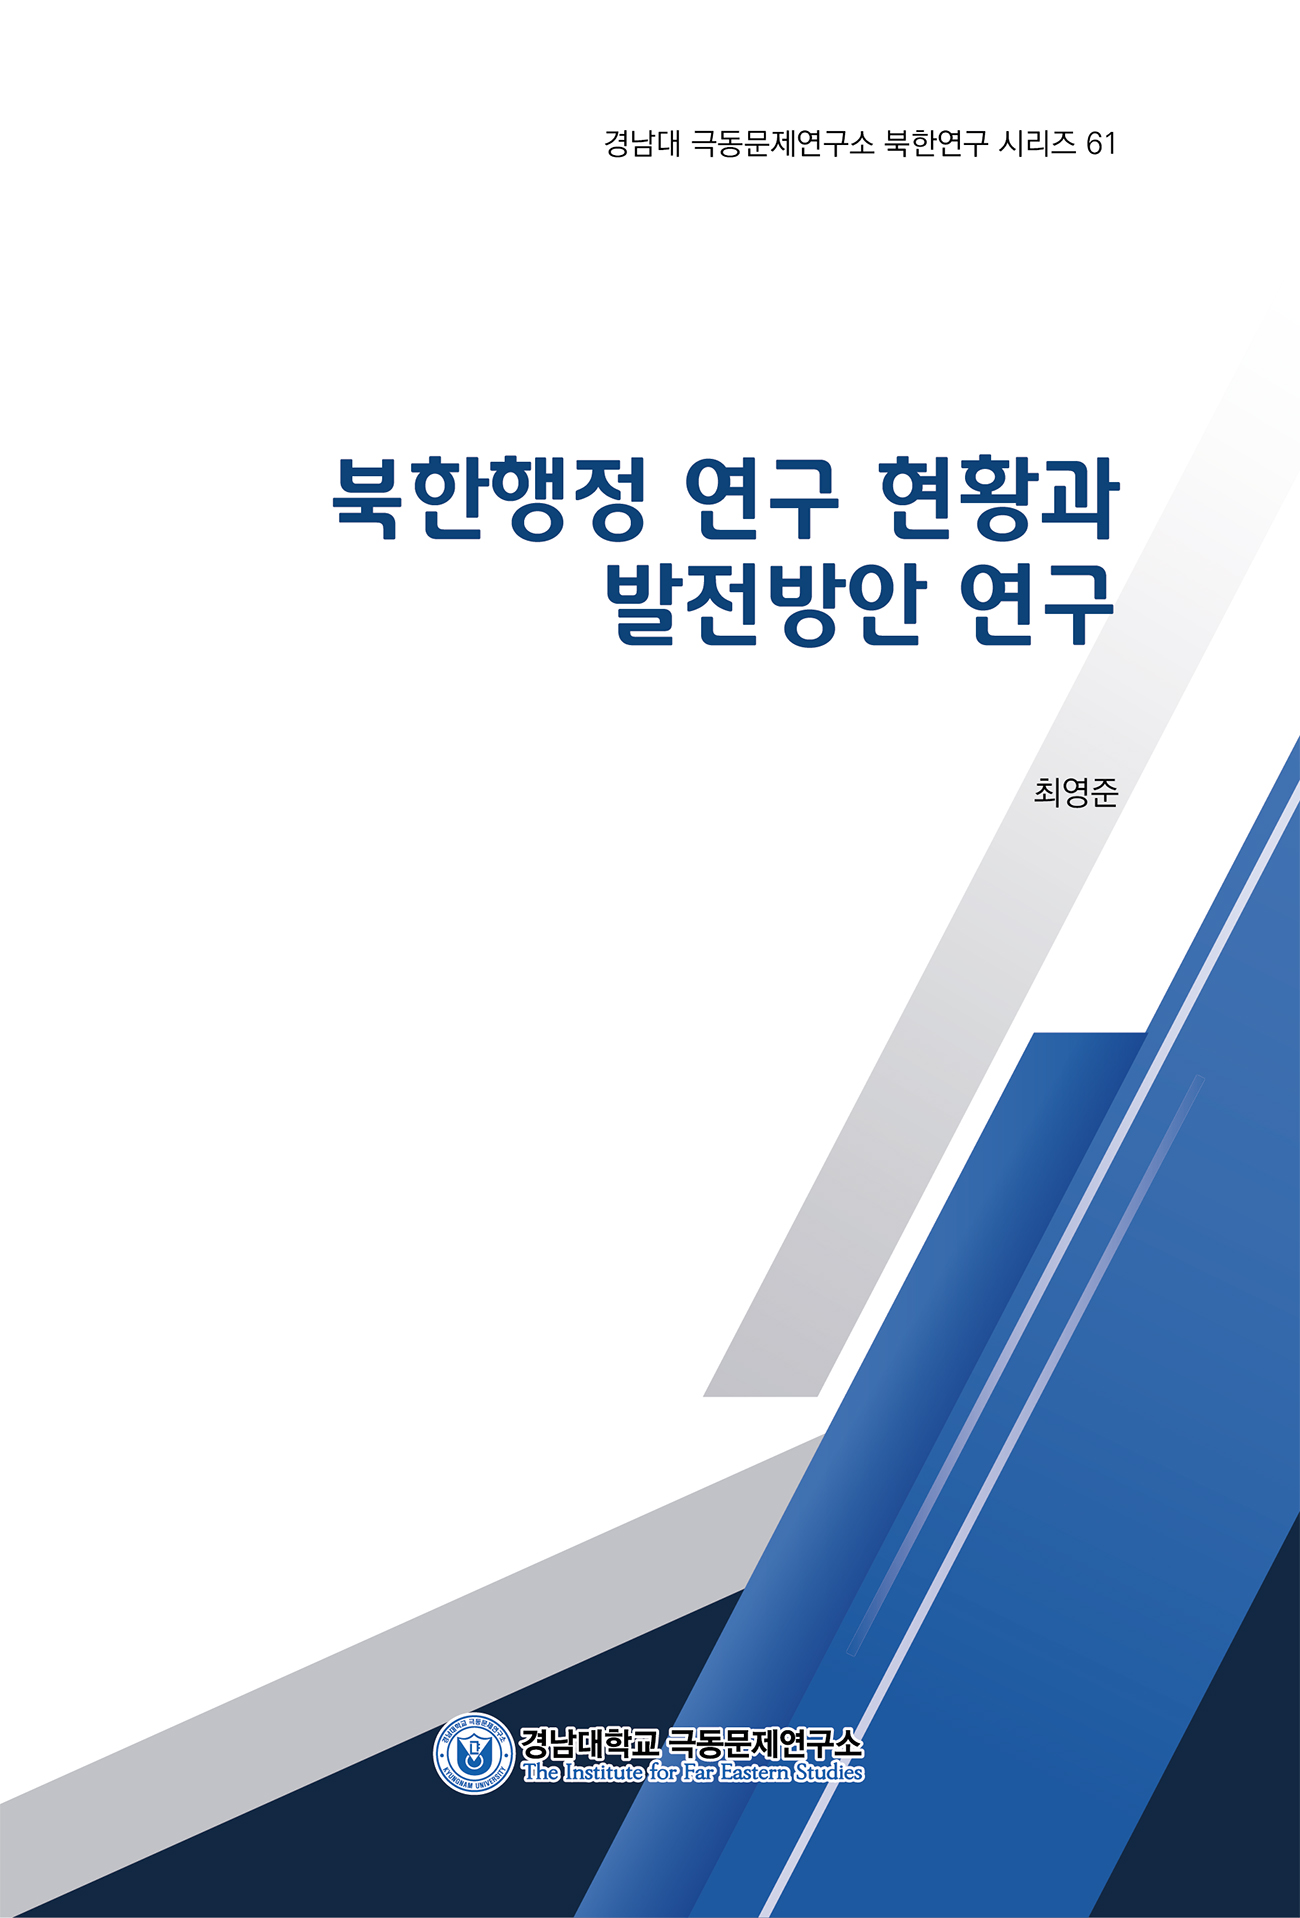 북한행정 연구 현황과 발전방안 연구 대표이미지